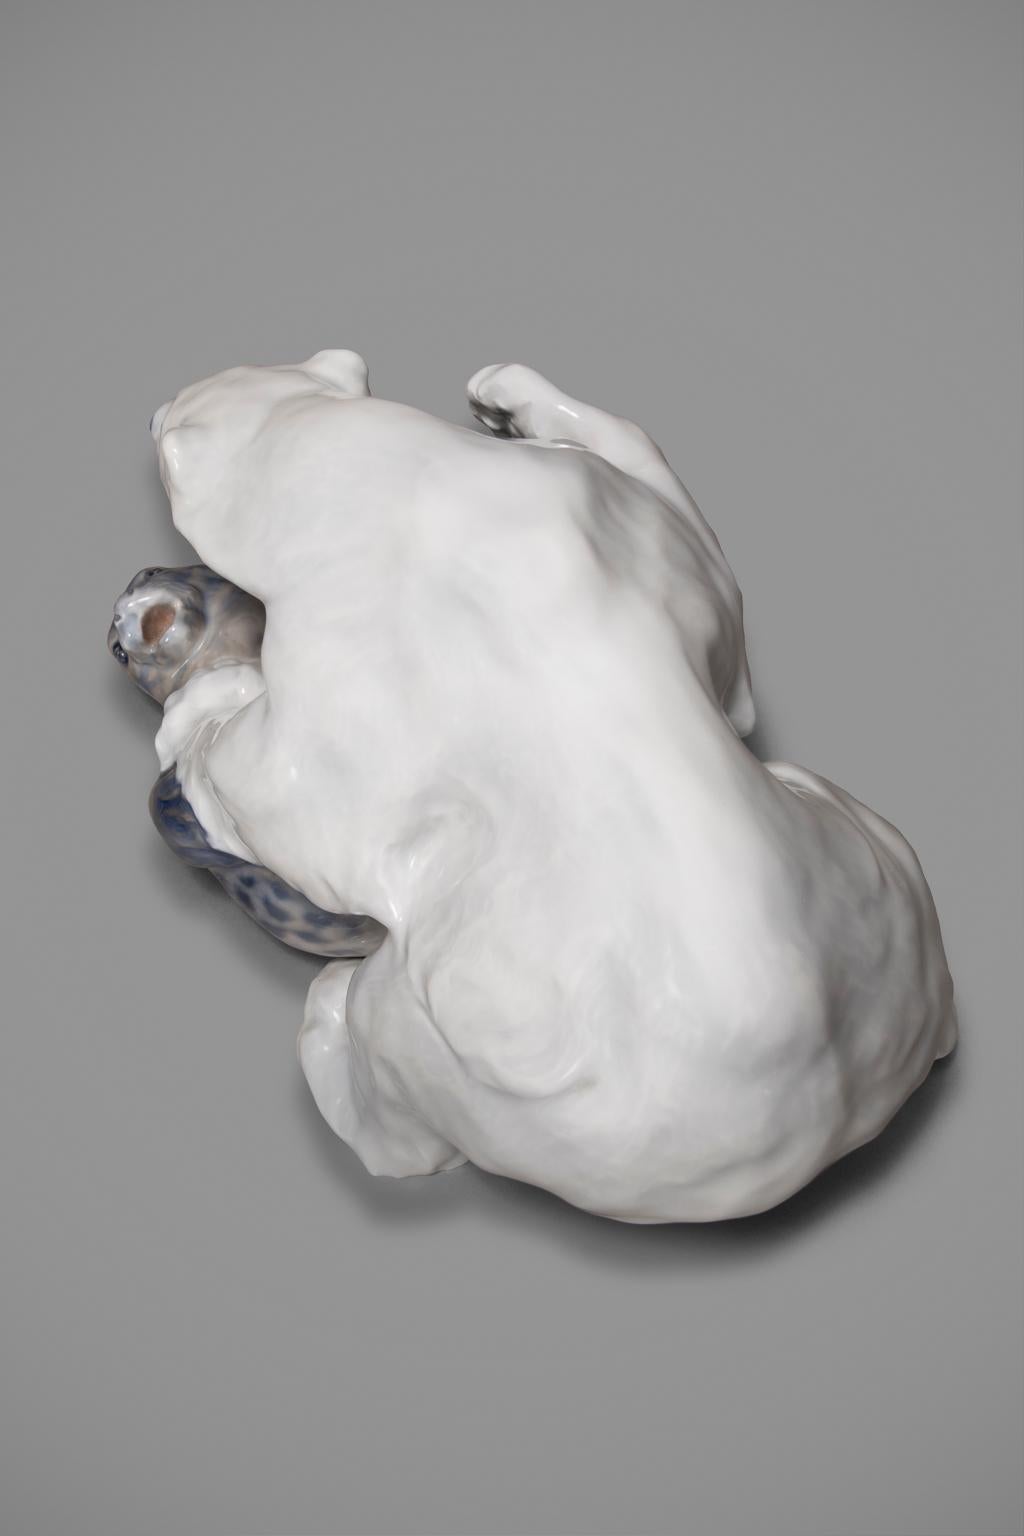 Royal Copenhagen Porcelain Figurine Knud Kyhn Polar Bear & Seal #1108 For Sale 2